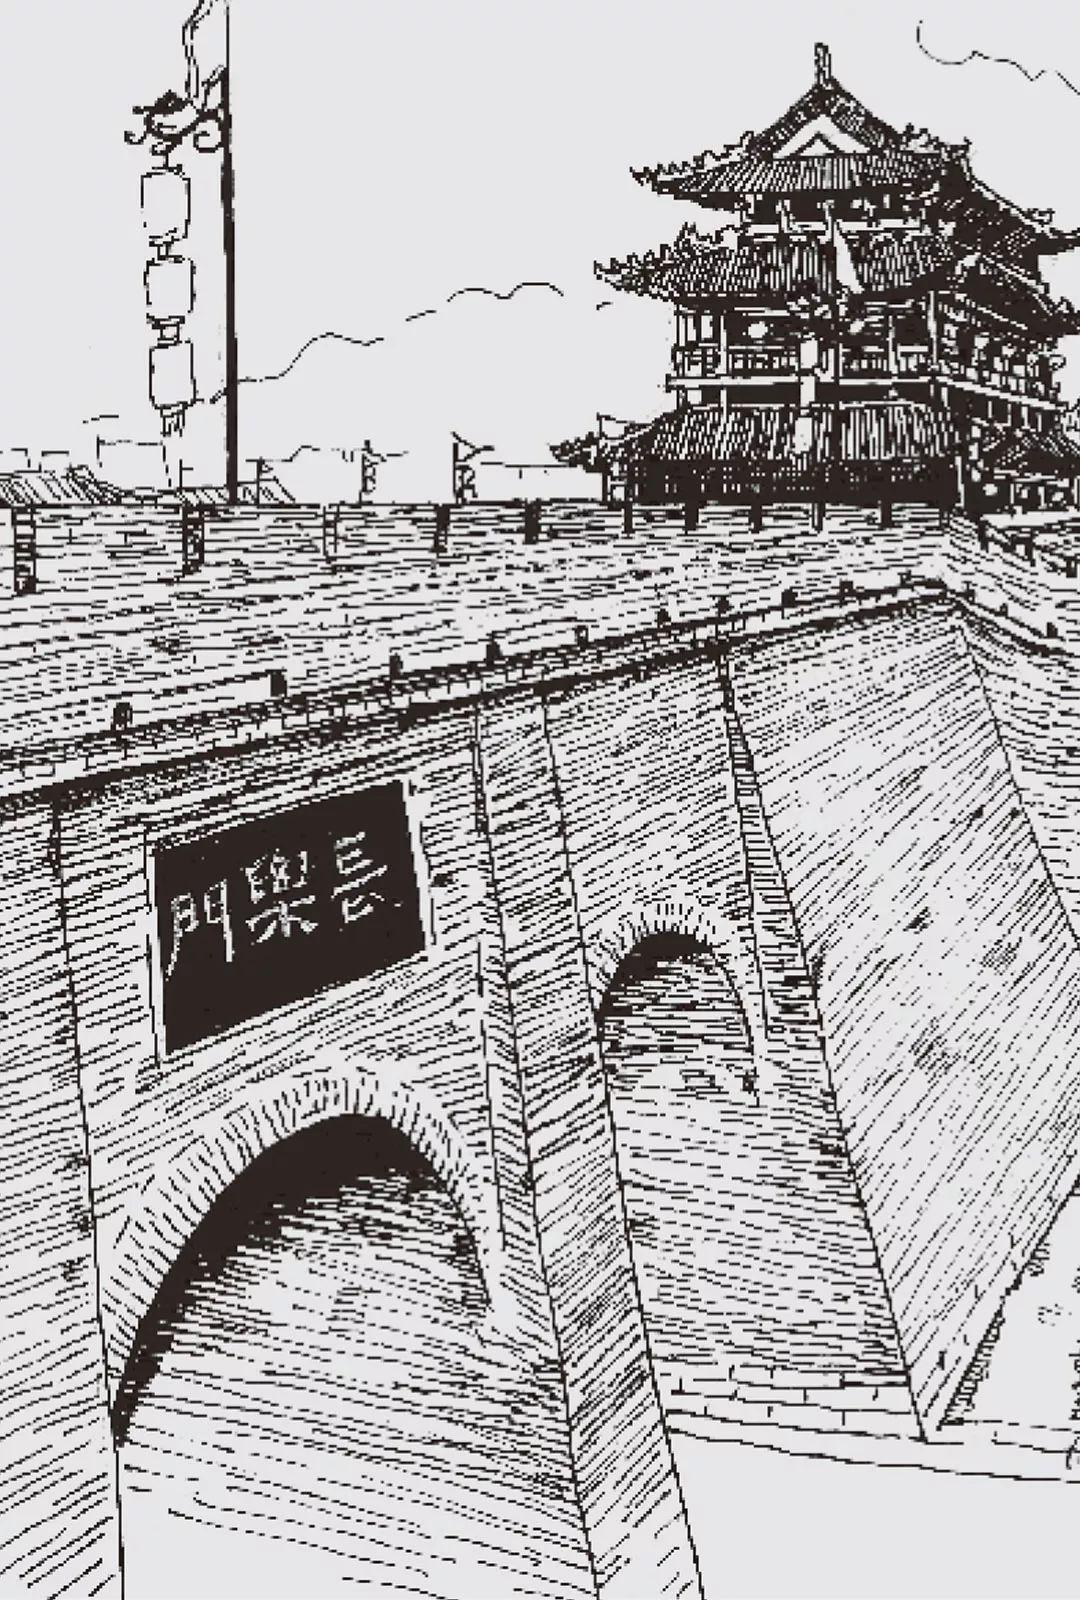 西安城墙,迄今已有600多年的历史